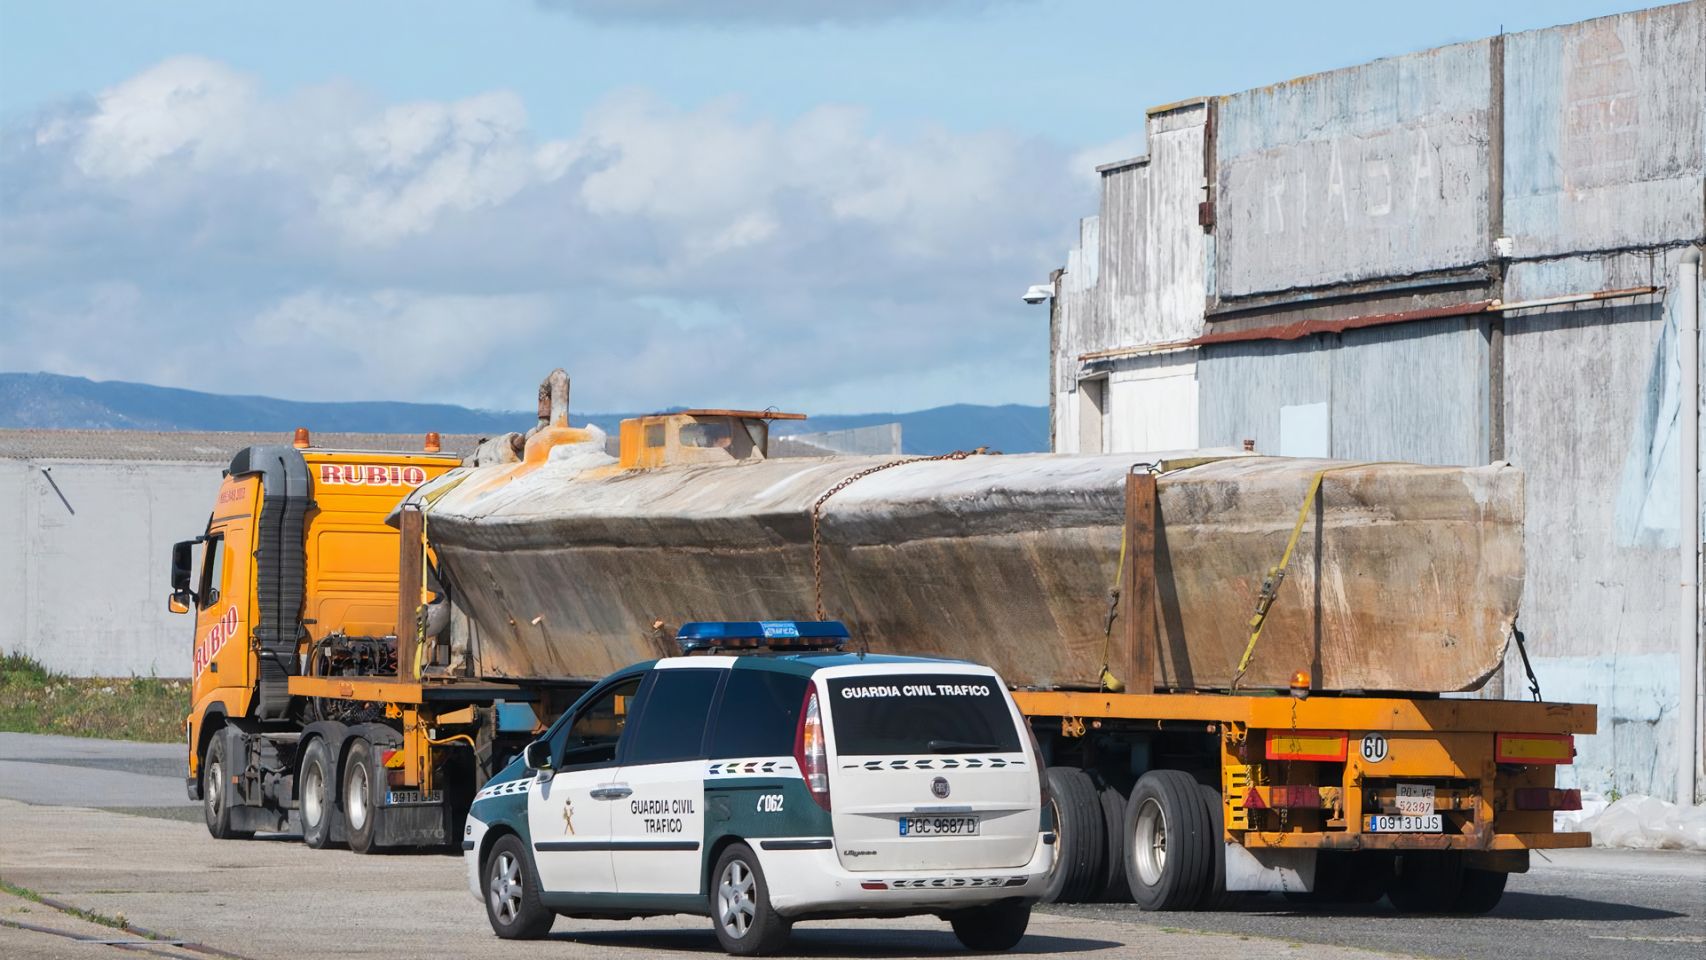 El narcosubmarino hallado en la ría de Arousa, a su llegada a un muelle del puerto de Vilagarcía (Pontevedra), en un transporte especial escoltado por la Guardia Civil.